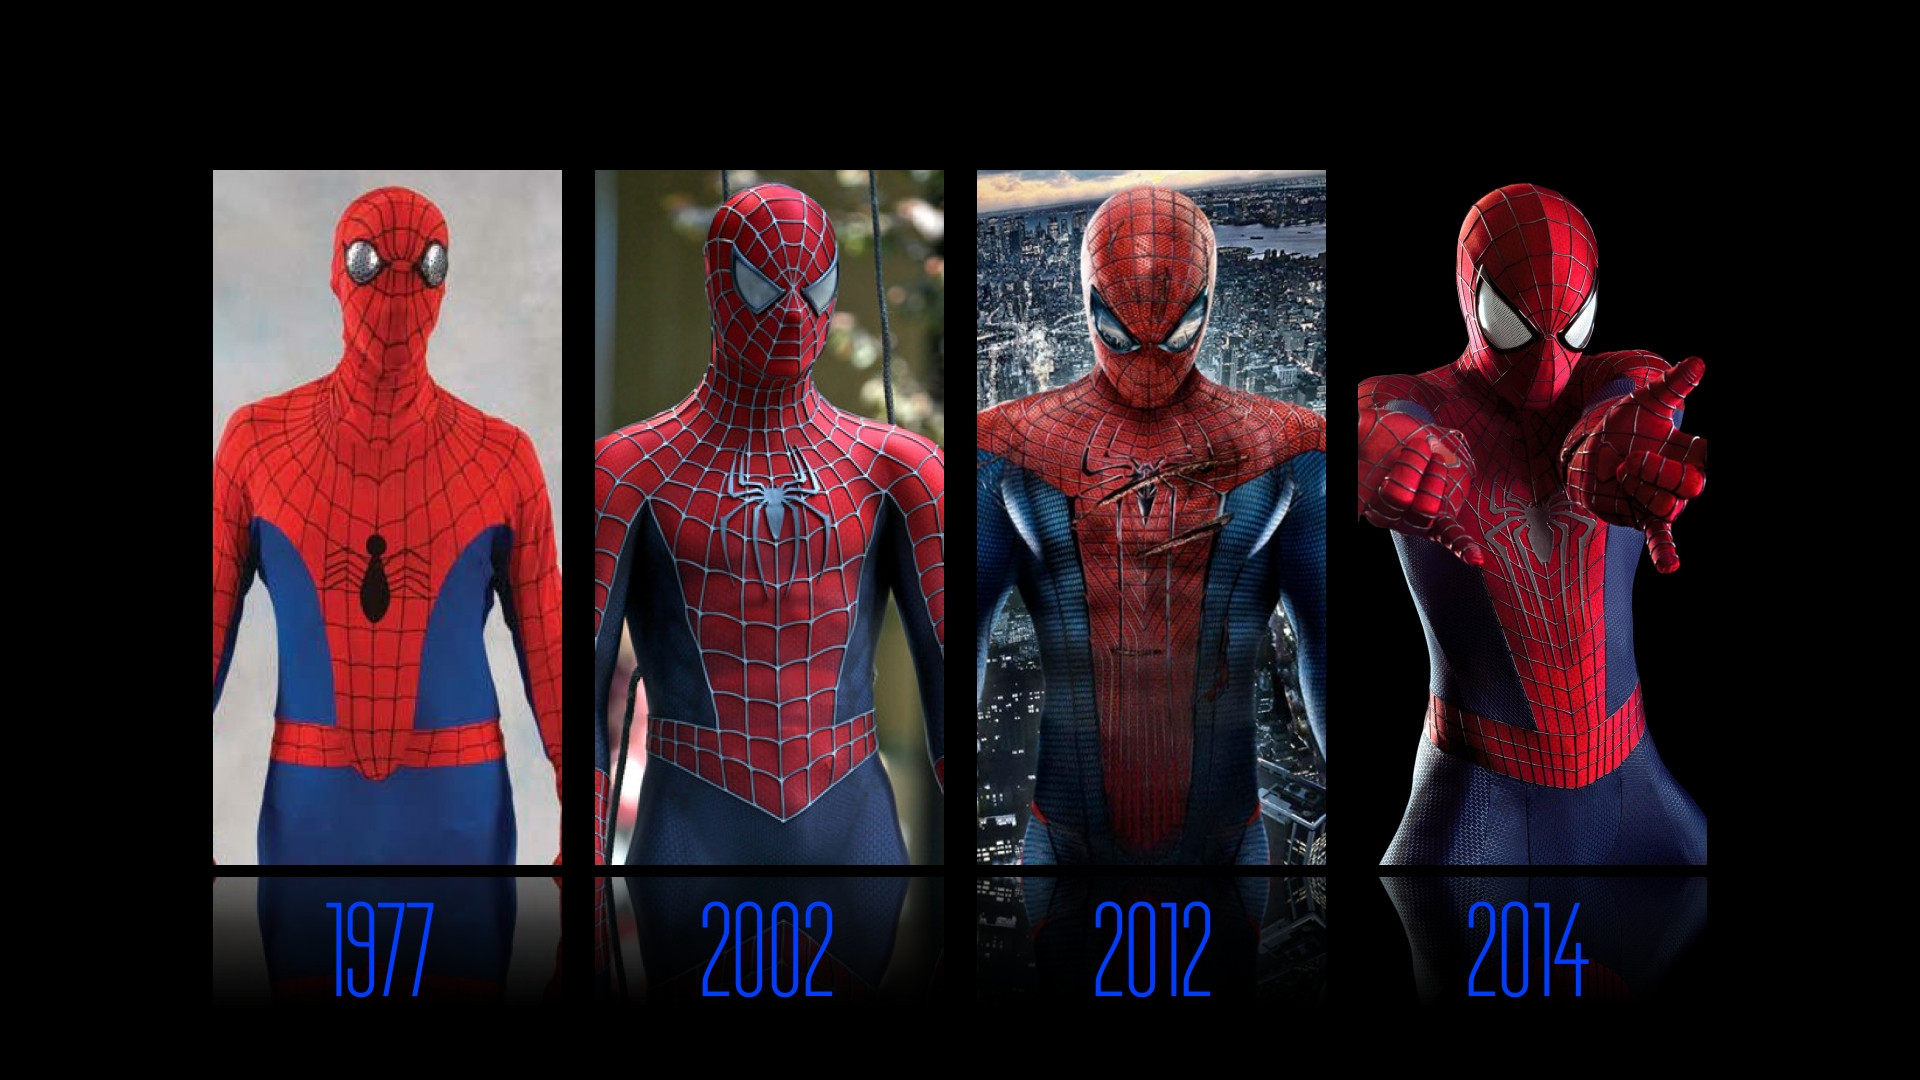 fond d'écran en direct spiderman,homme araignée,super héros,personnage fictif,anatomie humaine,art